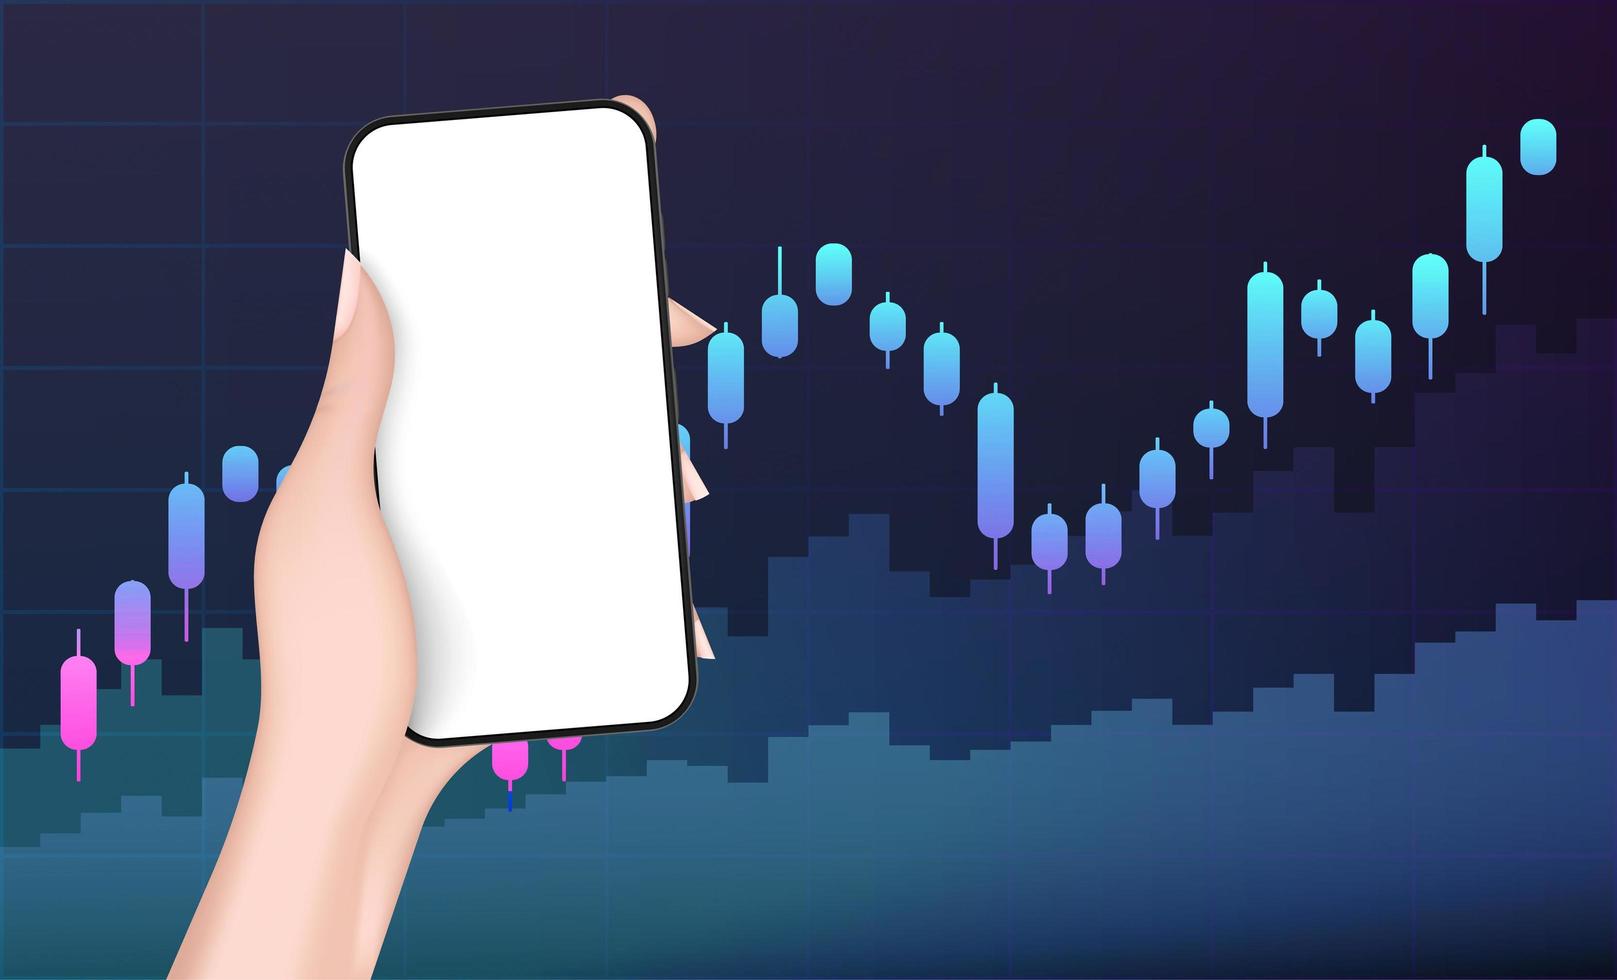 una mano sostiene un teléfono con una pantalla blanca en el fondo de los gráficos financieros. el concepto de análisis, negocios o comercio en el intercambio financiero. colores neón, estilo realista. vector. vector